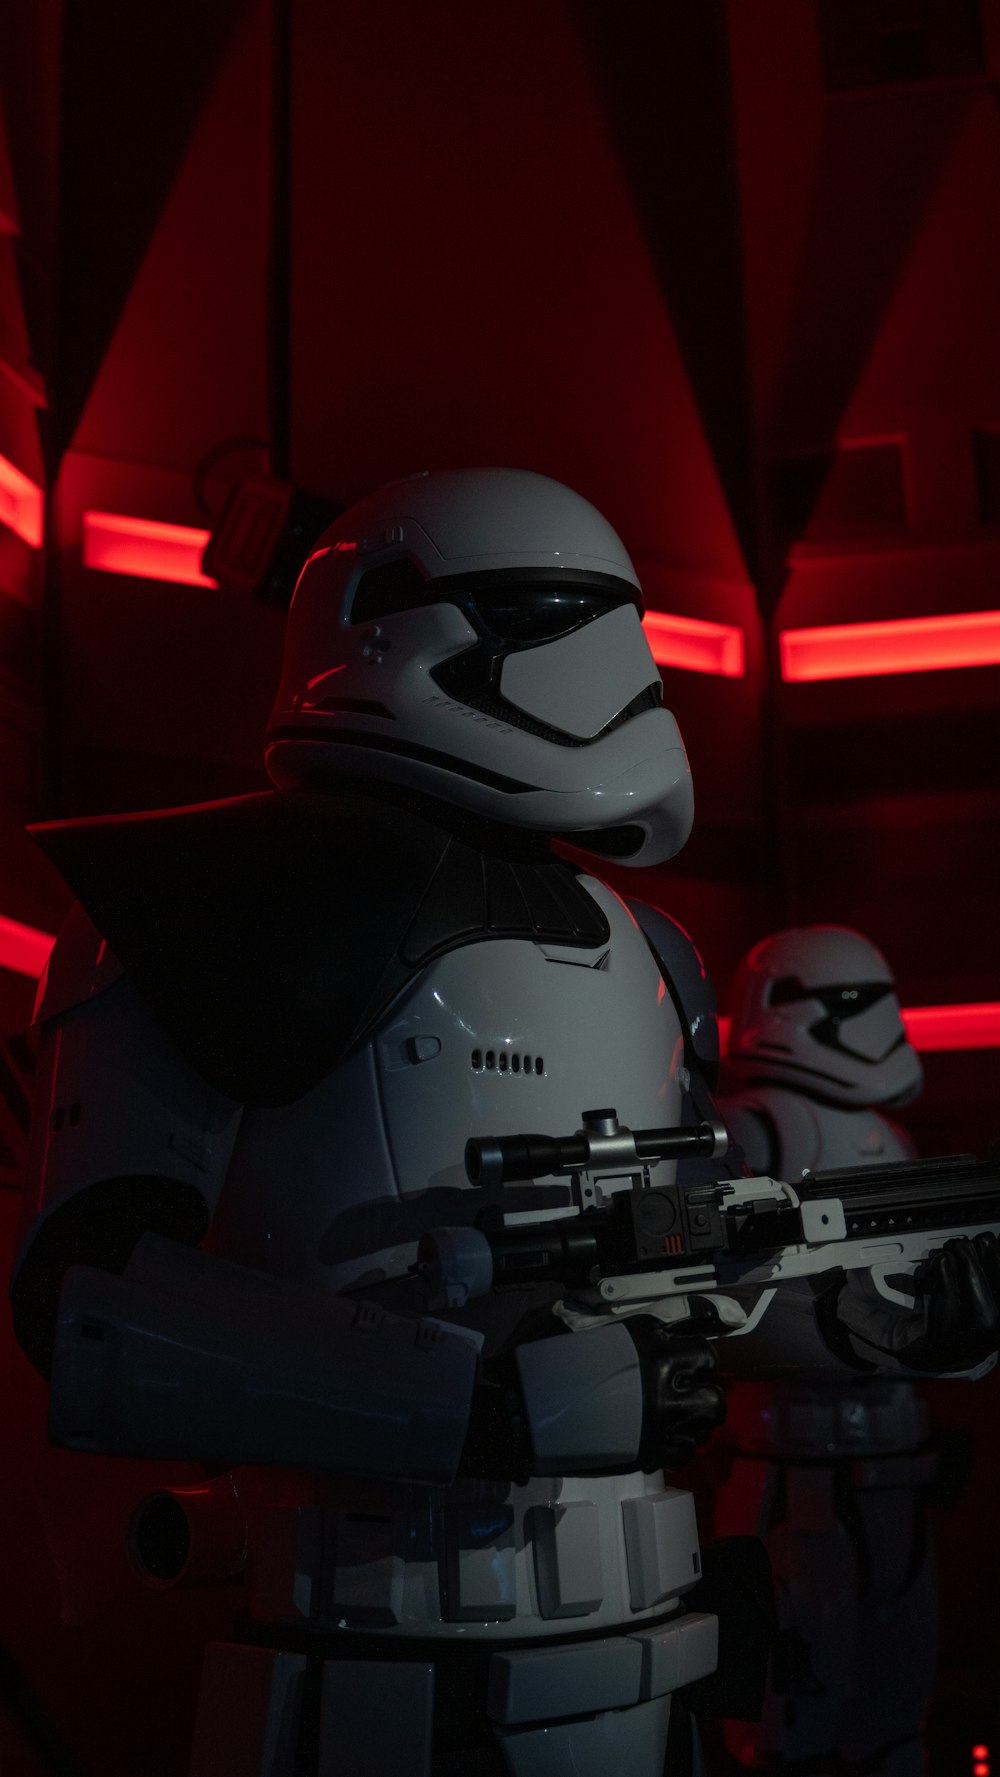 Un personaje de Star Wars sosteniendo un arma en una habitación oscura